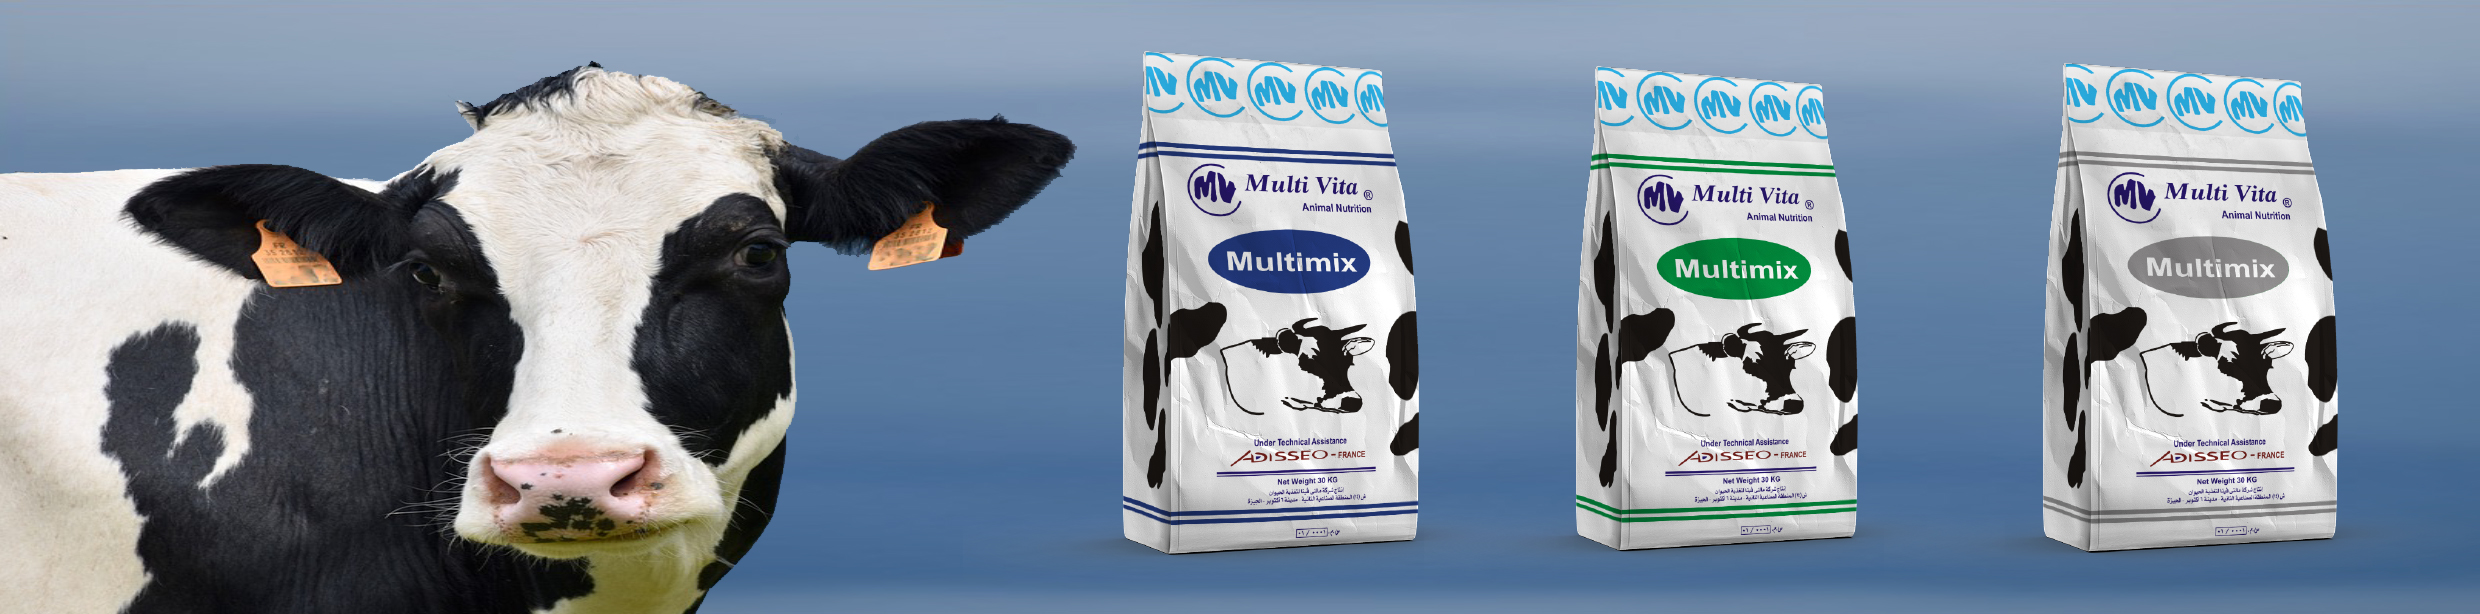 Multimix Dairy